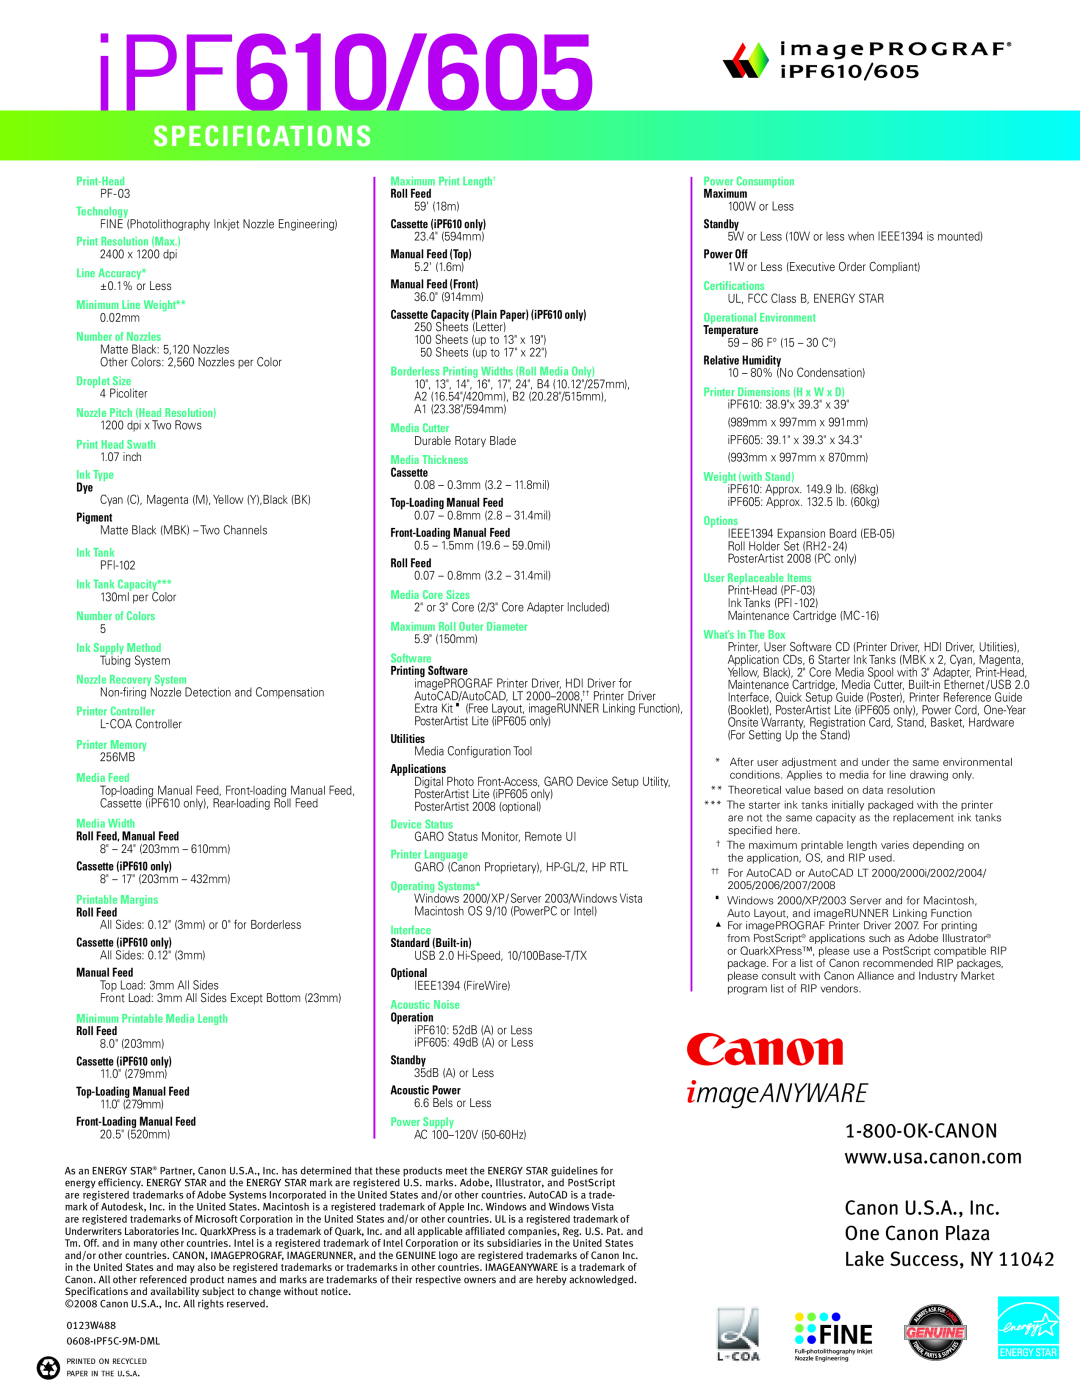 Canon IPF605, IPF720, IPF500, IPF610, IPF710 iPF610/605, Specifications, Canon U.S.A., Inc One Canon Plaza Lake Success, NY 